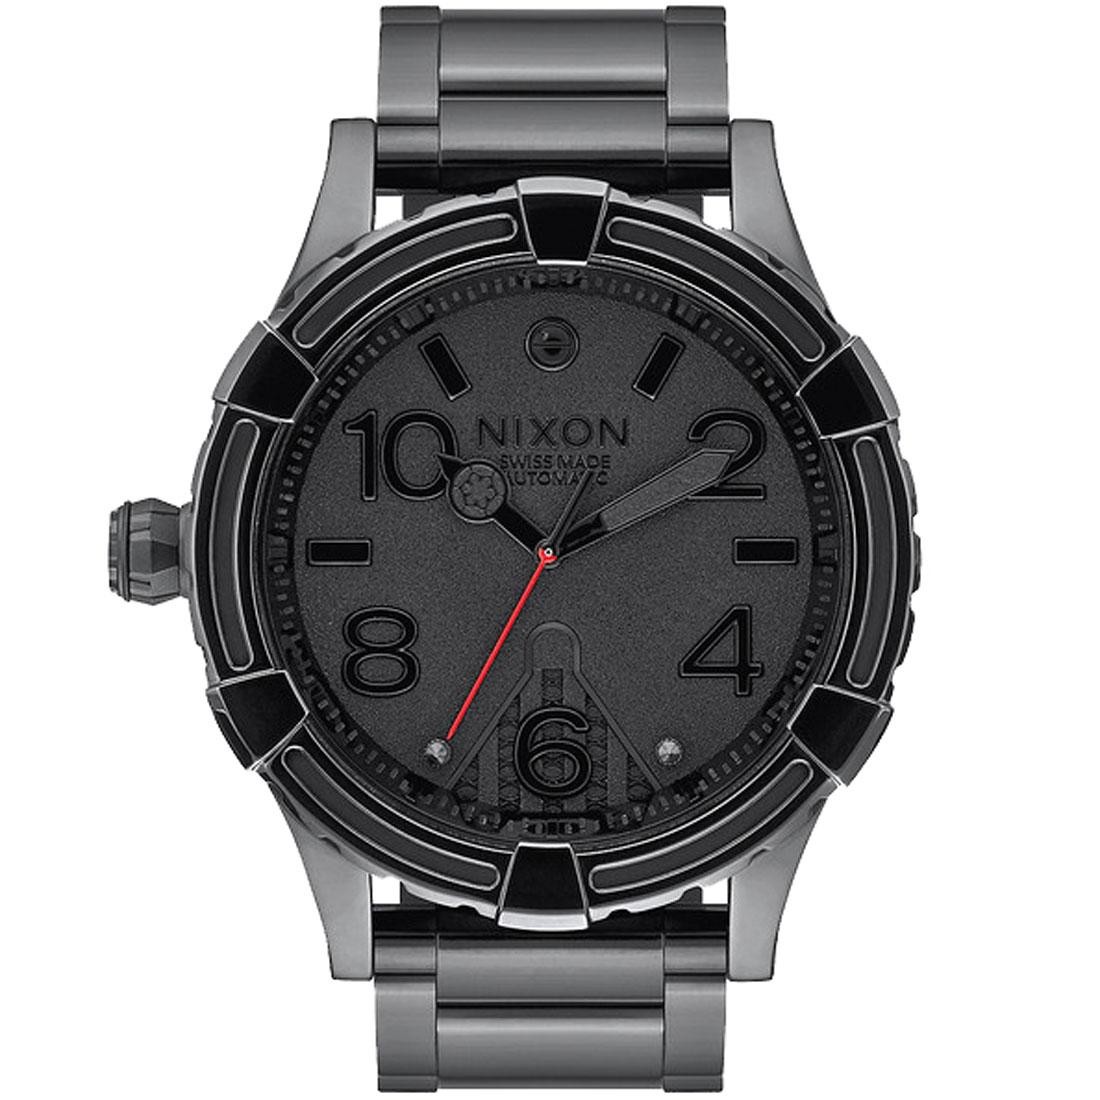 Nixon x Star Wars 51-30 Automatic LTD Watch - Vader Limited